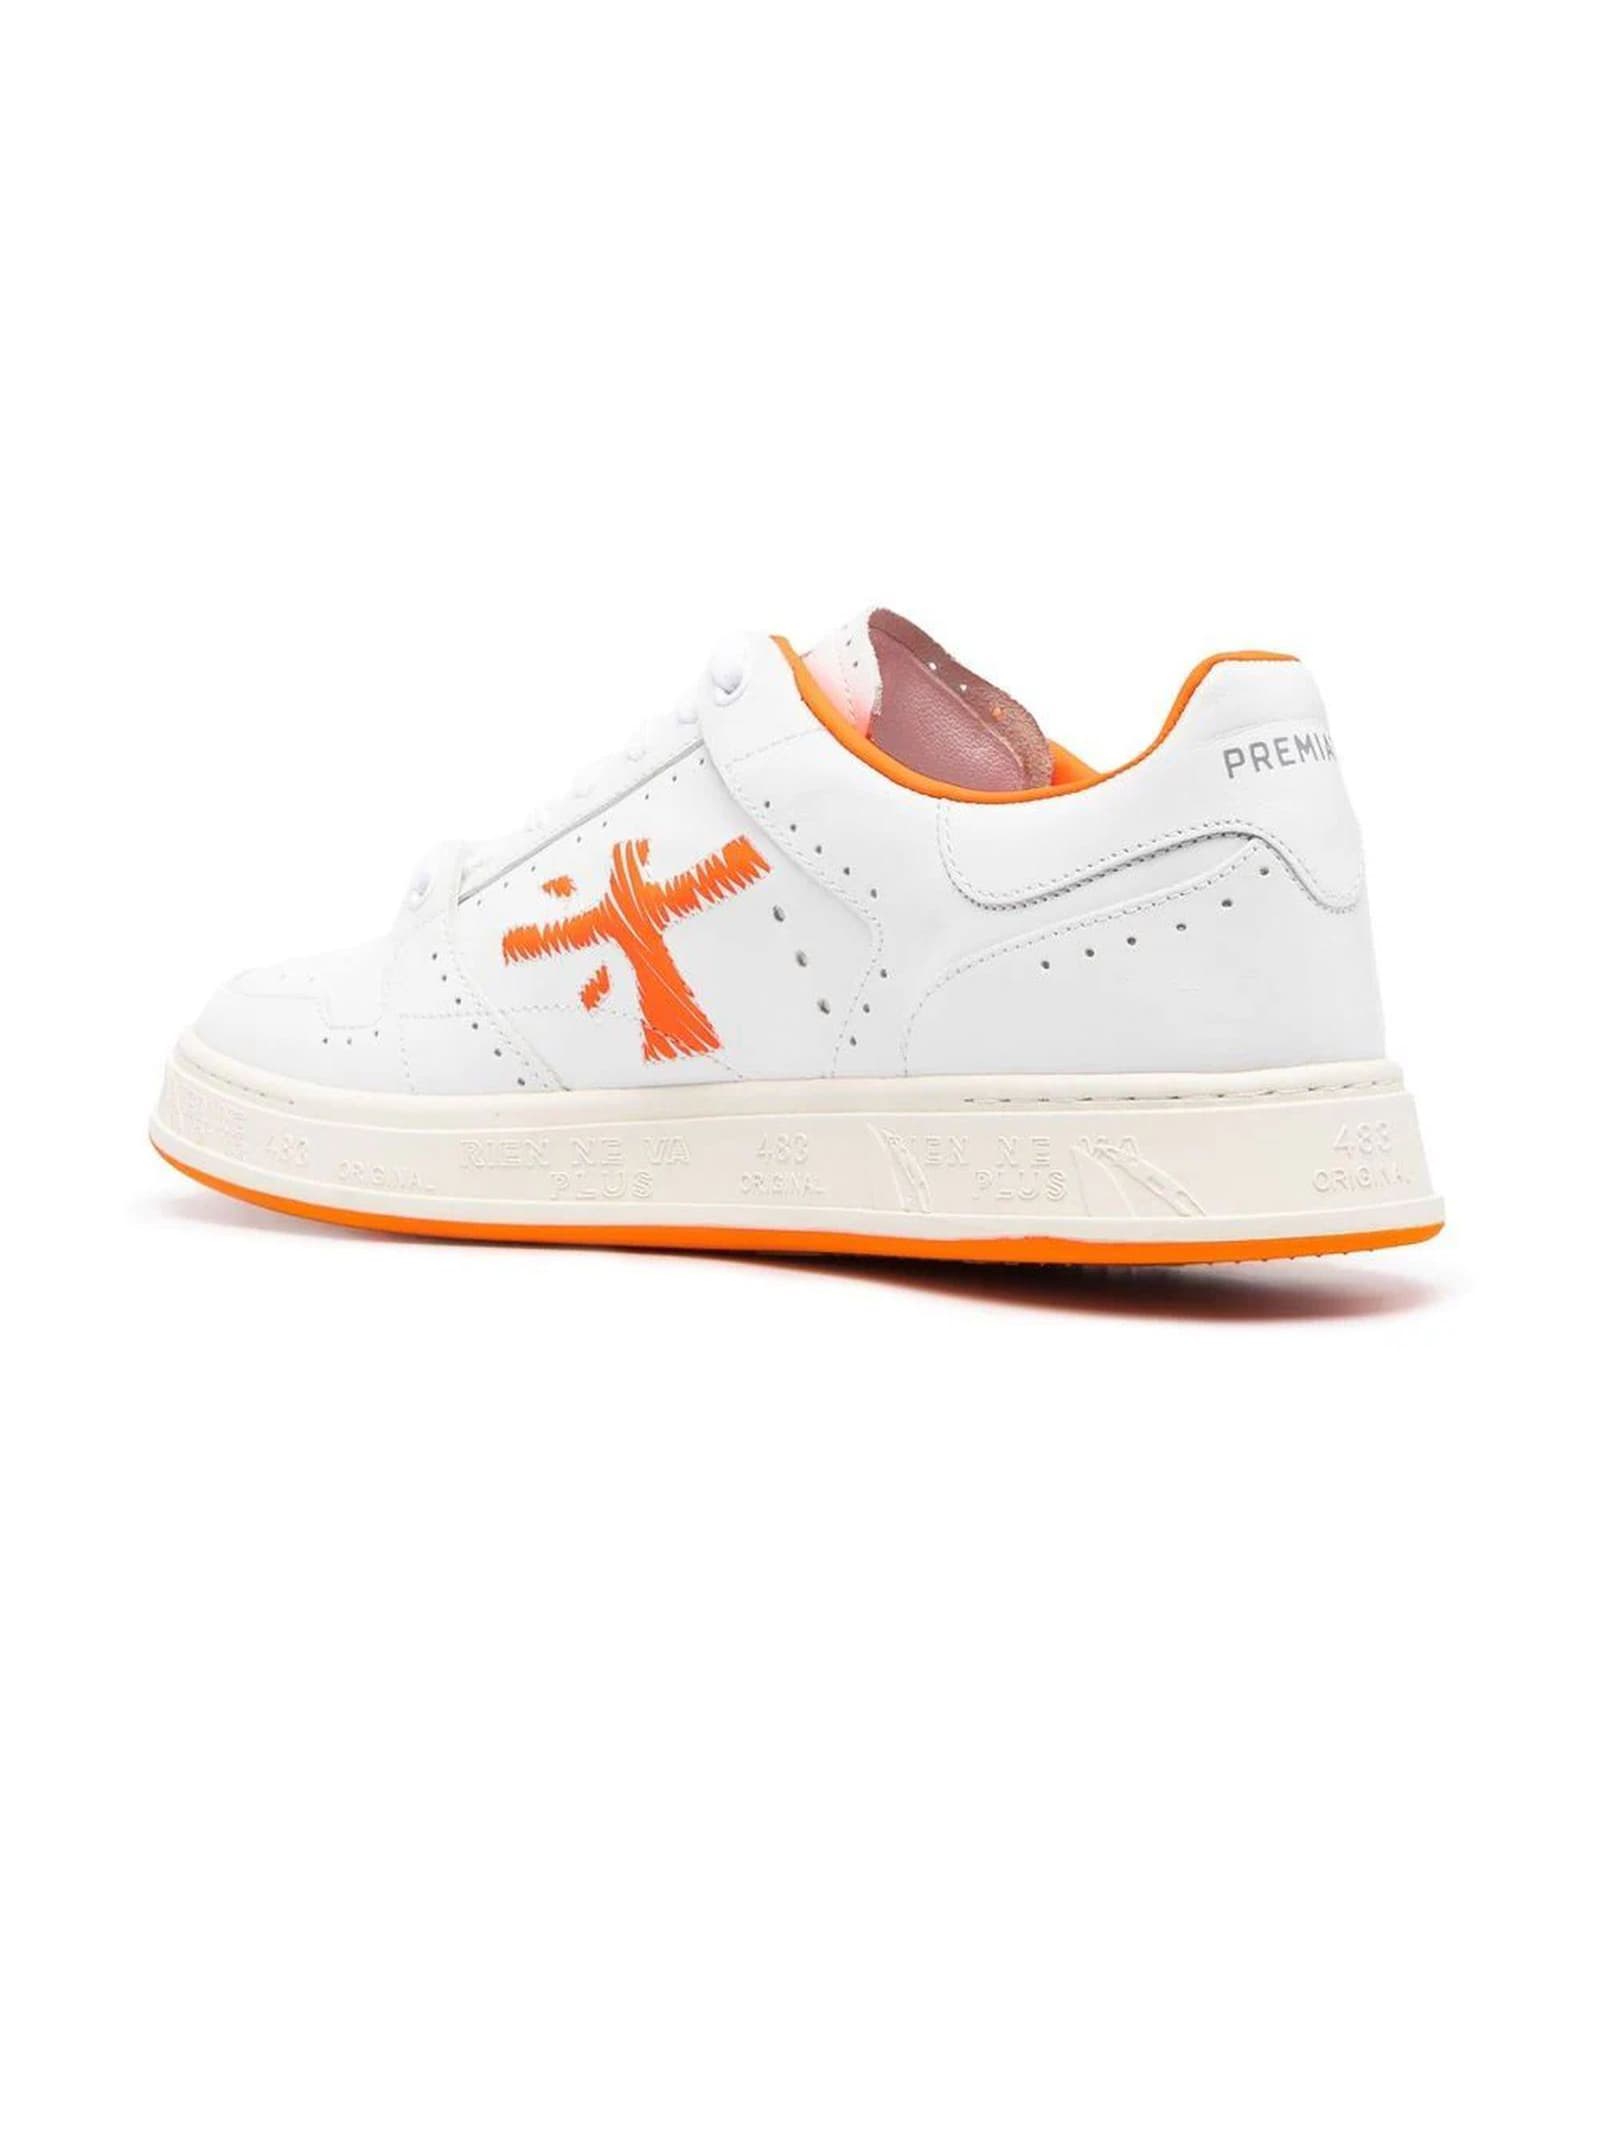 Shop Premiata White Leather Quinn Sneakers In Bianco/arancione